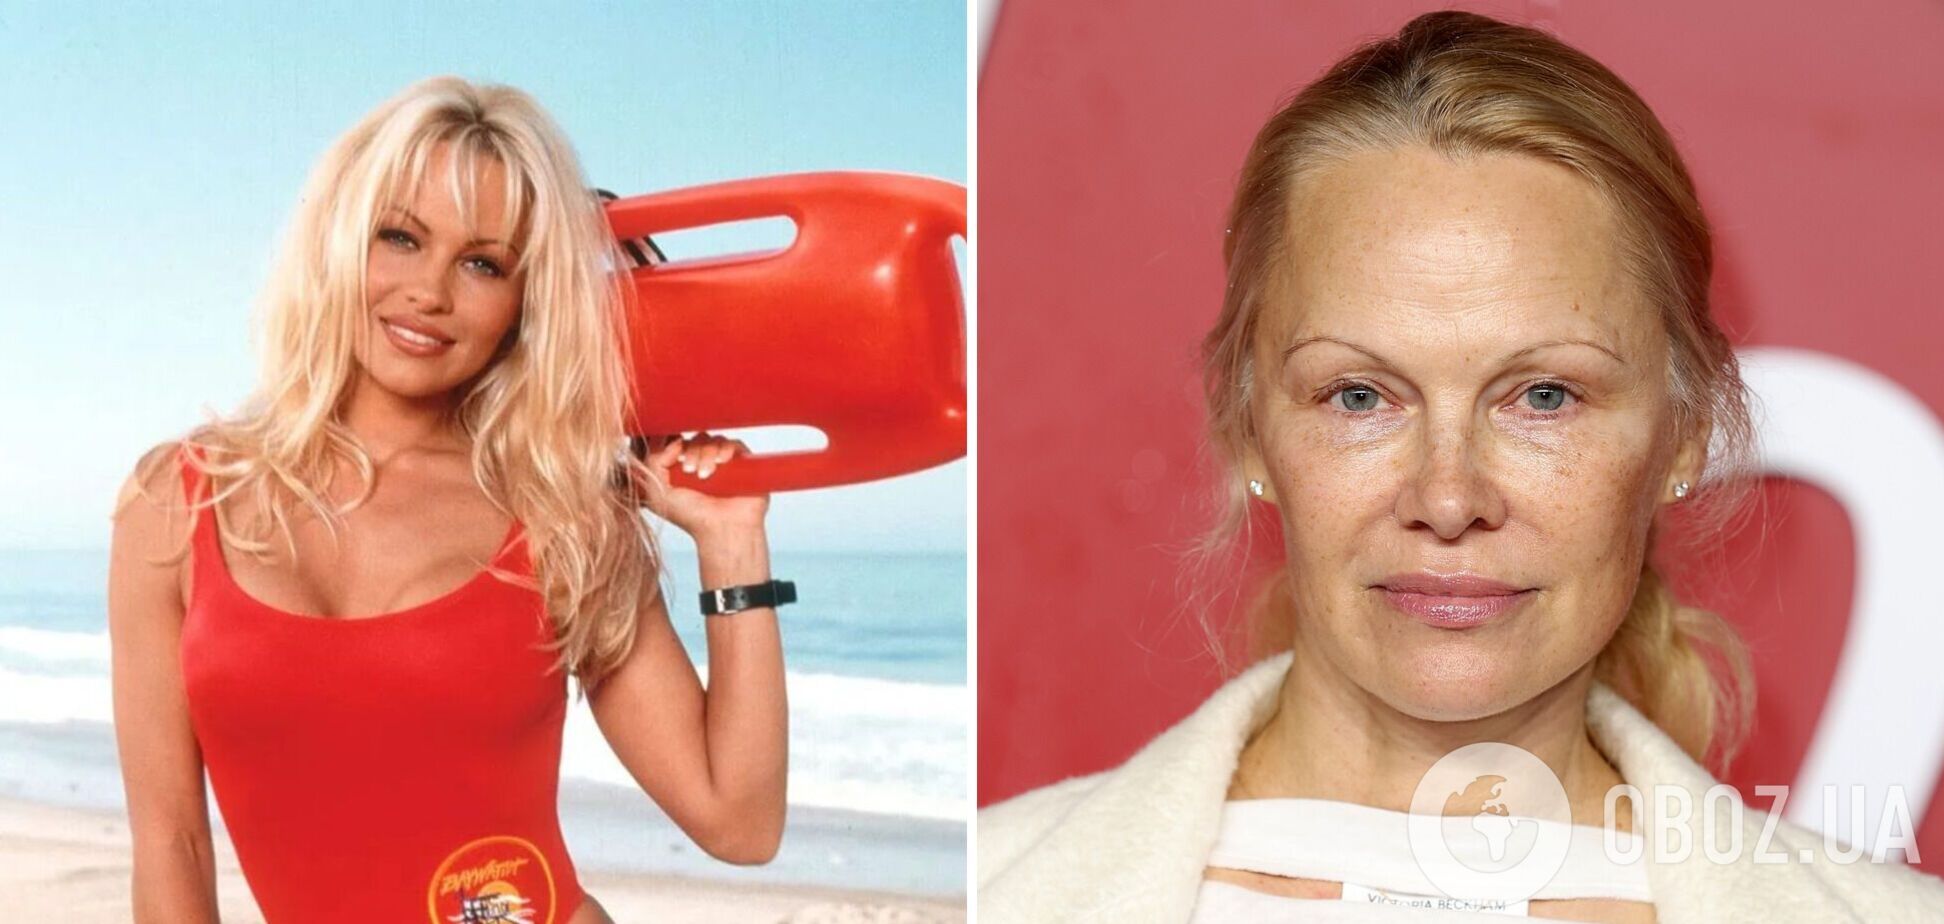 Памела Андерсон, отказавшаяся от макияжа, рассказала об уходе за кожей сейчас: в чем секрет красоты секс-символа 90-х